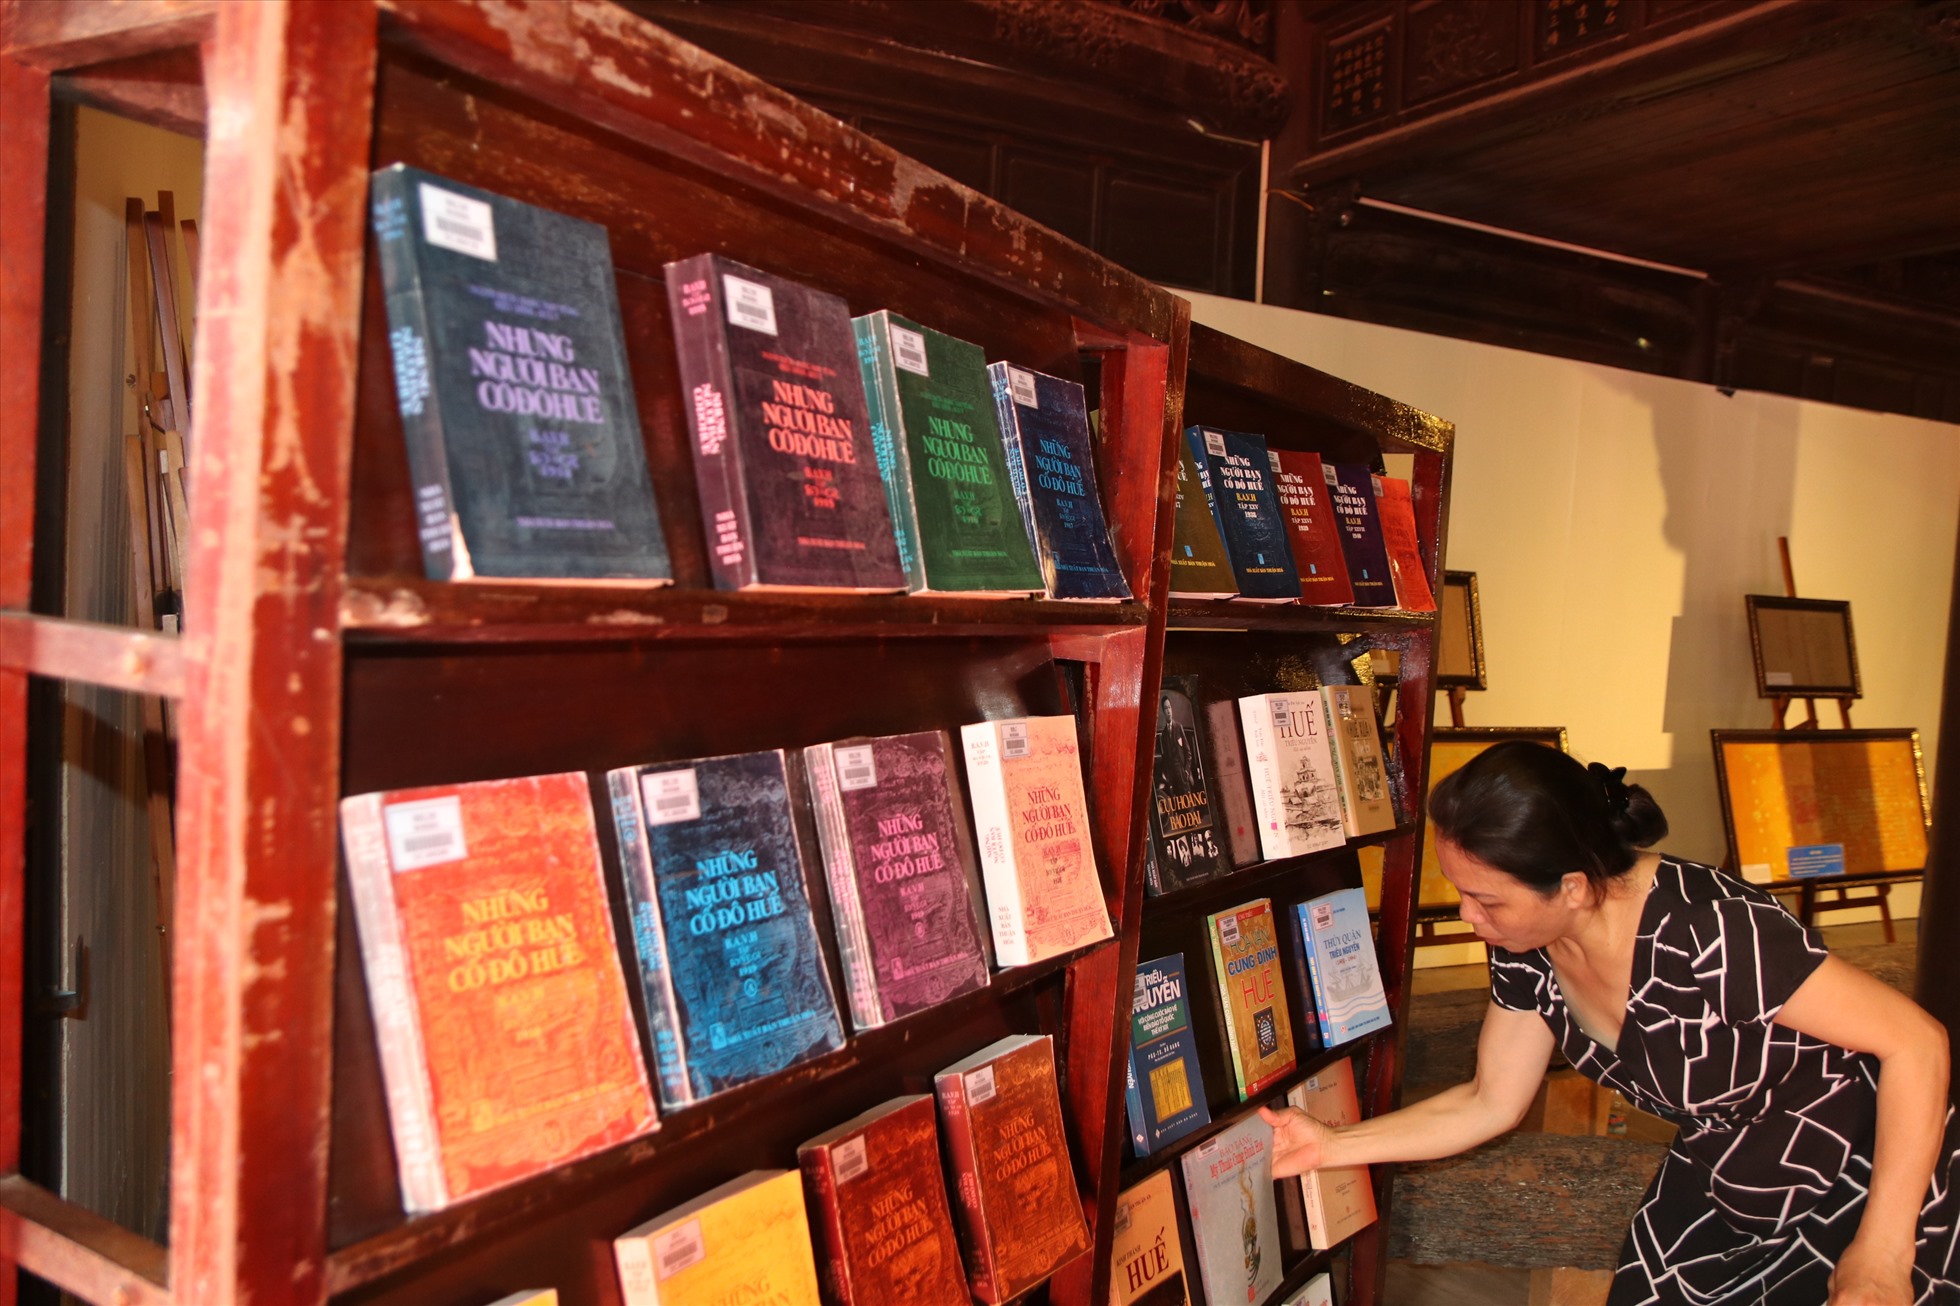 Ngày Sách và Văn hóa đọc Việt Nam được kỳ vọng tạo ra một cơ hội giúp tăng cường ý thức đọc sách và văn hóa đọc trong cộng đồng. Nhằm khuyến khích mọi người đọc sách nhiều hơn, vì đọc sách không chỉ giúp chúng ta giải trí, mà còn là cách để học hỏi thêm nhiều kiến thức và kỹ năng mới. Bên cạnh đó, ngày hội cũng giúp tăng cường tình đoàn kết trong cộng đồng, các hoạt động đi kèm như hội thảo, giao lưu giữa các nhà văn hay những người có đam mê sách cũng góp phần bổ sung kiến thức và kinh nghiệm cho những người yêu đọc sách.